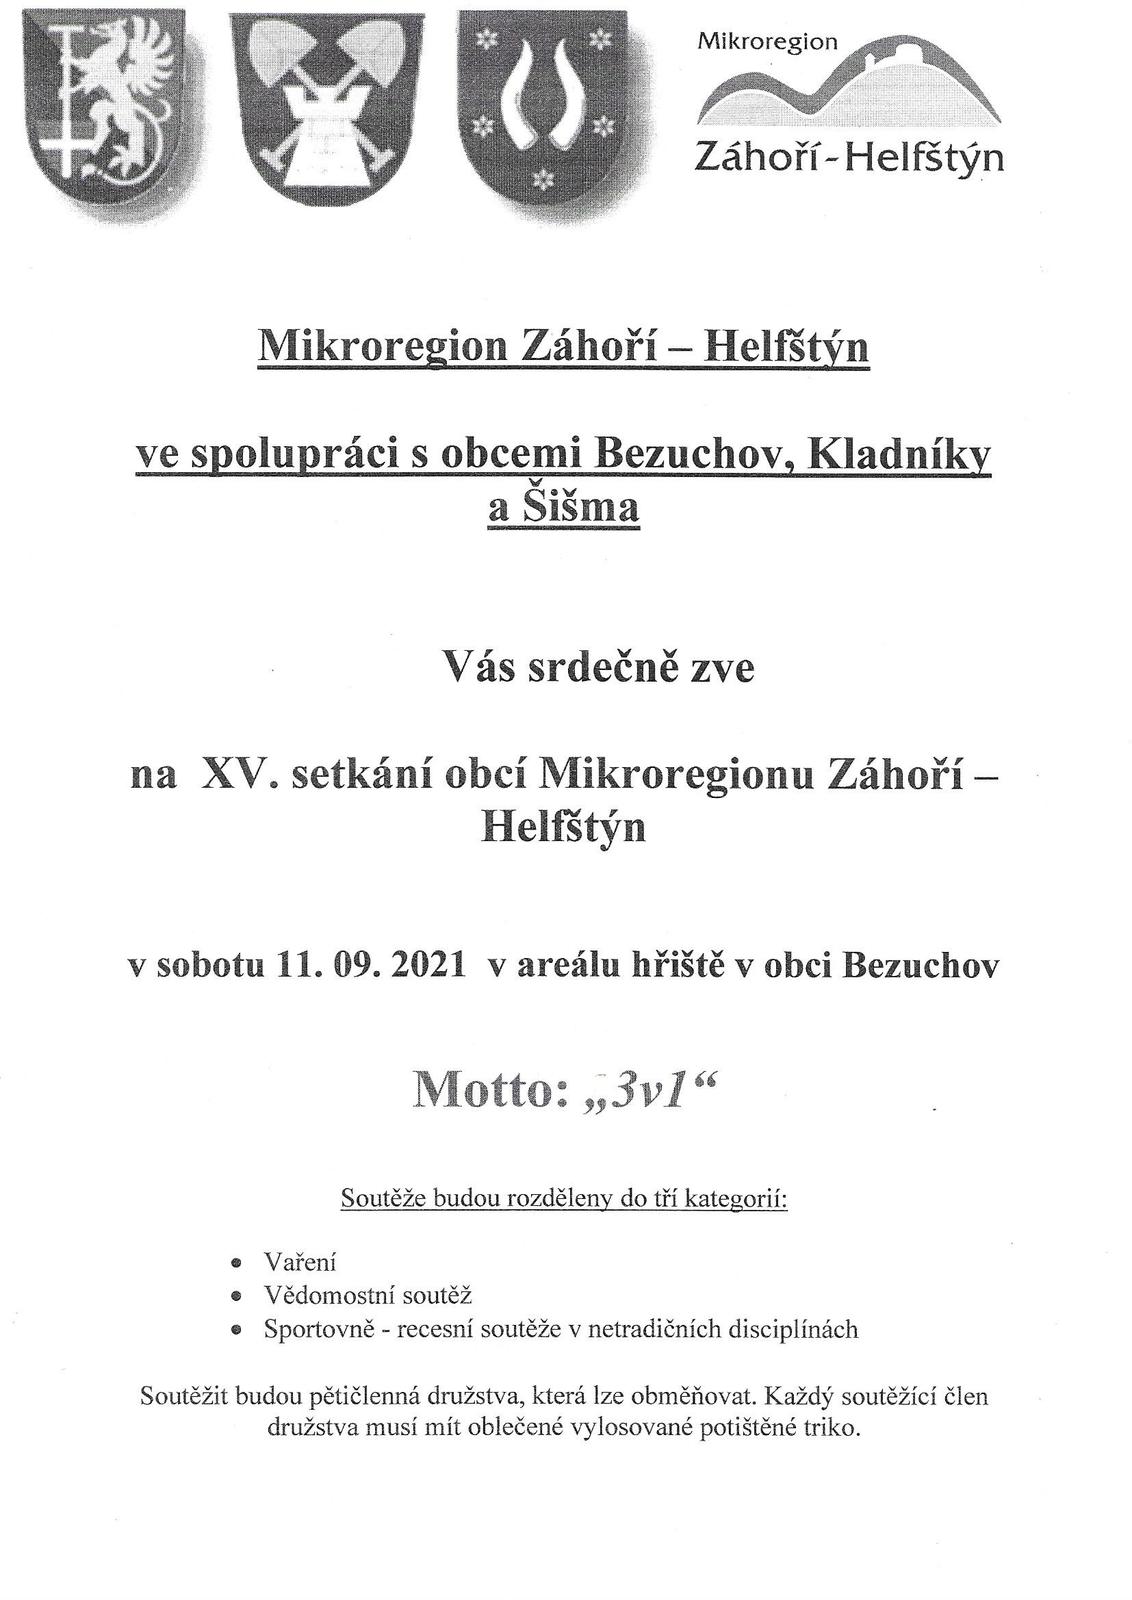 Mikroregion Záhoří - Helfštýn - 11.9.2021 - pozvánka_0001.jpg